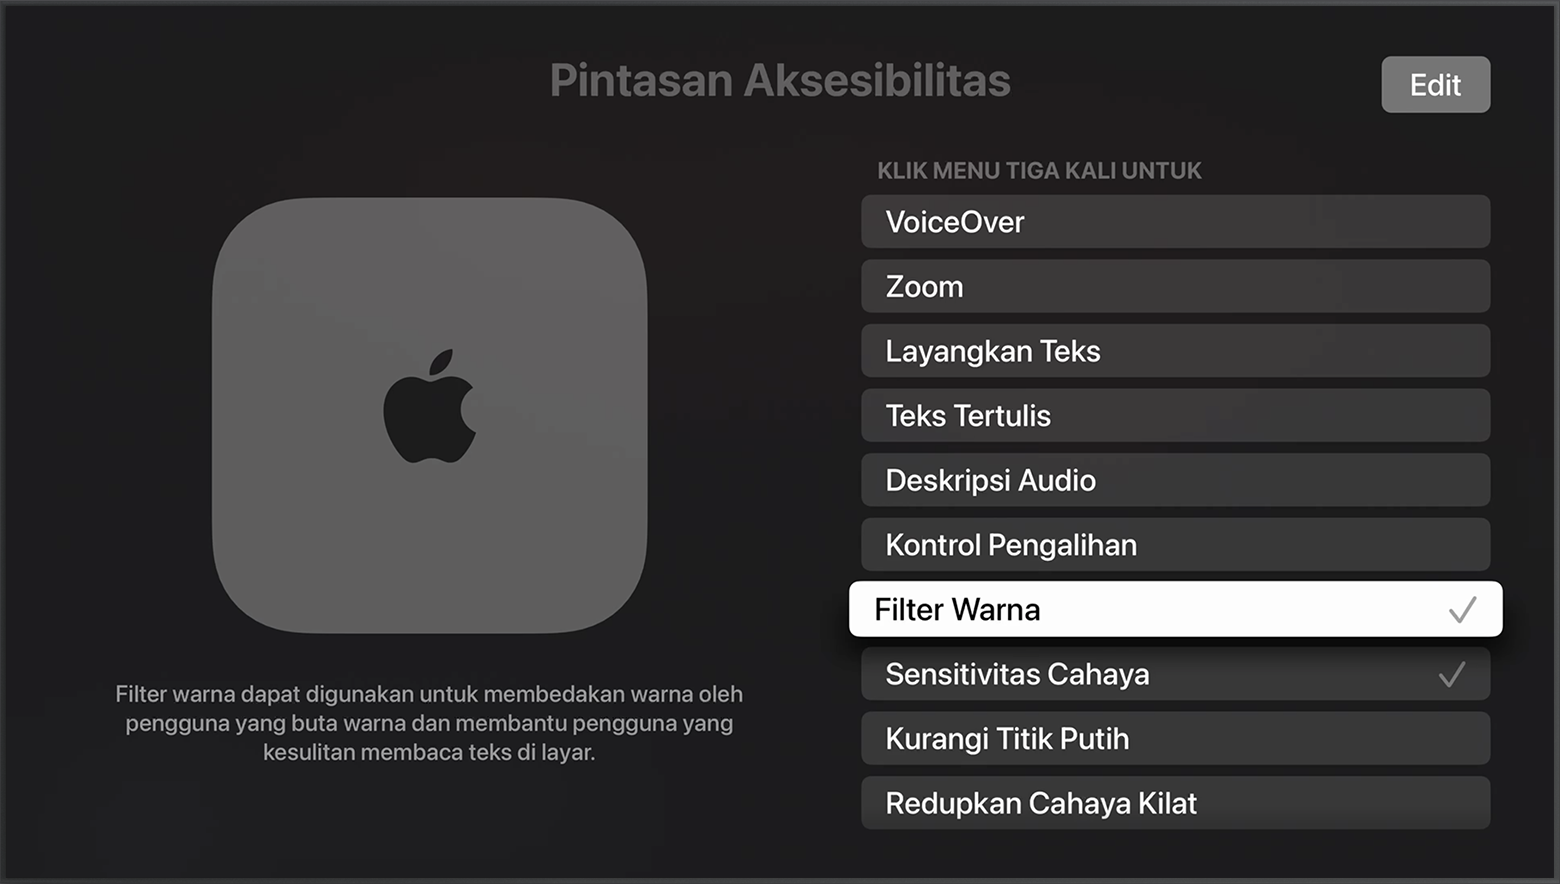 Filter Warna dipilih pada menu Pintasan Aksesibilitas